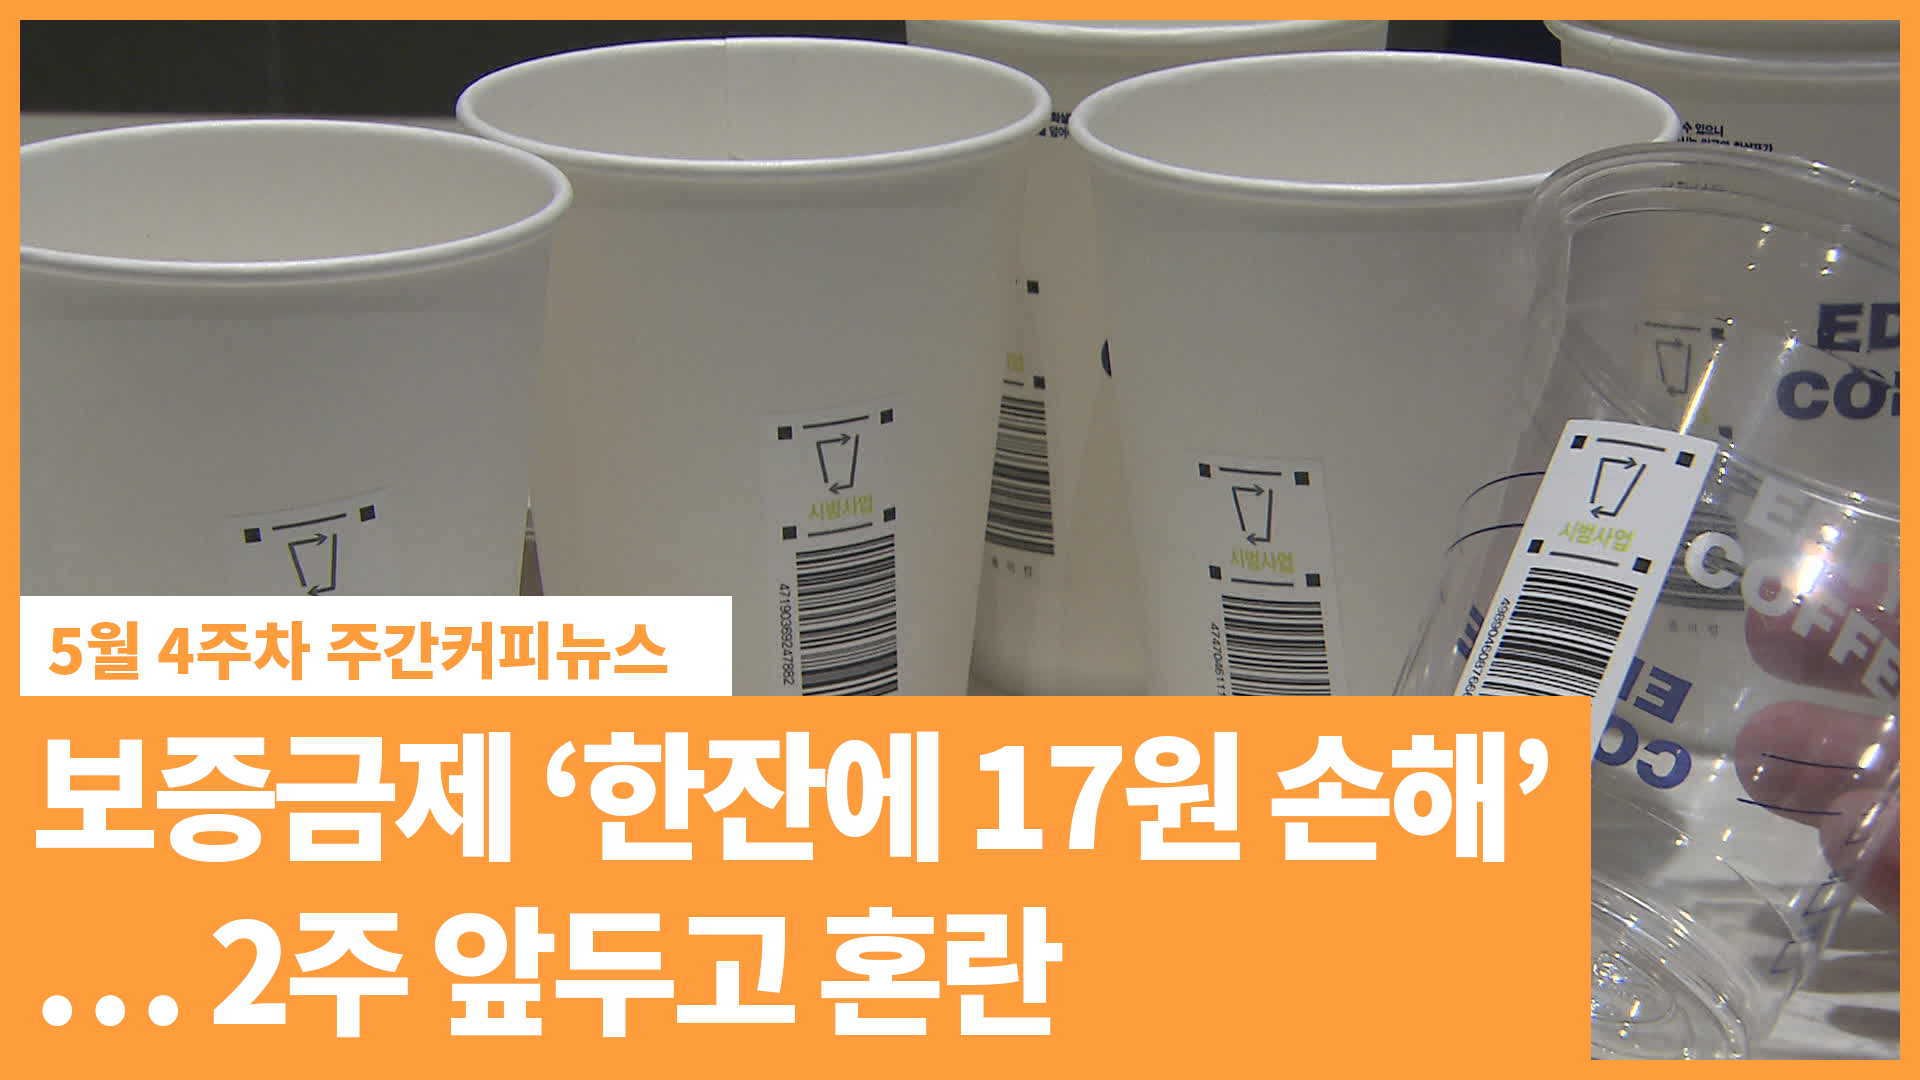 보증금제 ‘컵 하나에 17원 손해”… 2주 앞두고 혼란 | 5월 4주차 주간커피뉴스